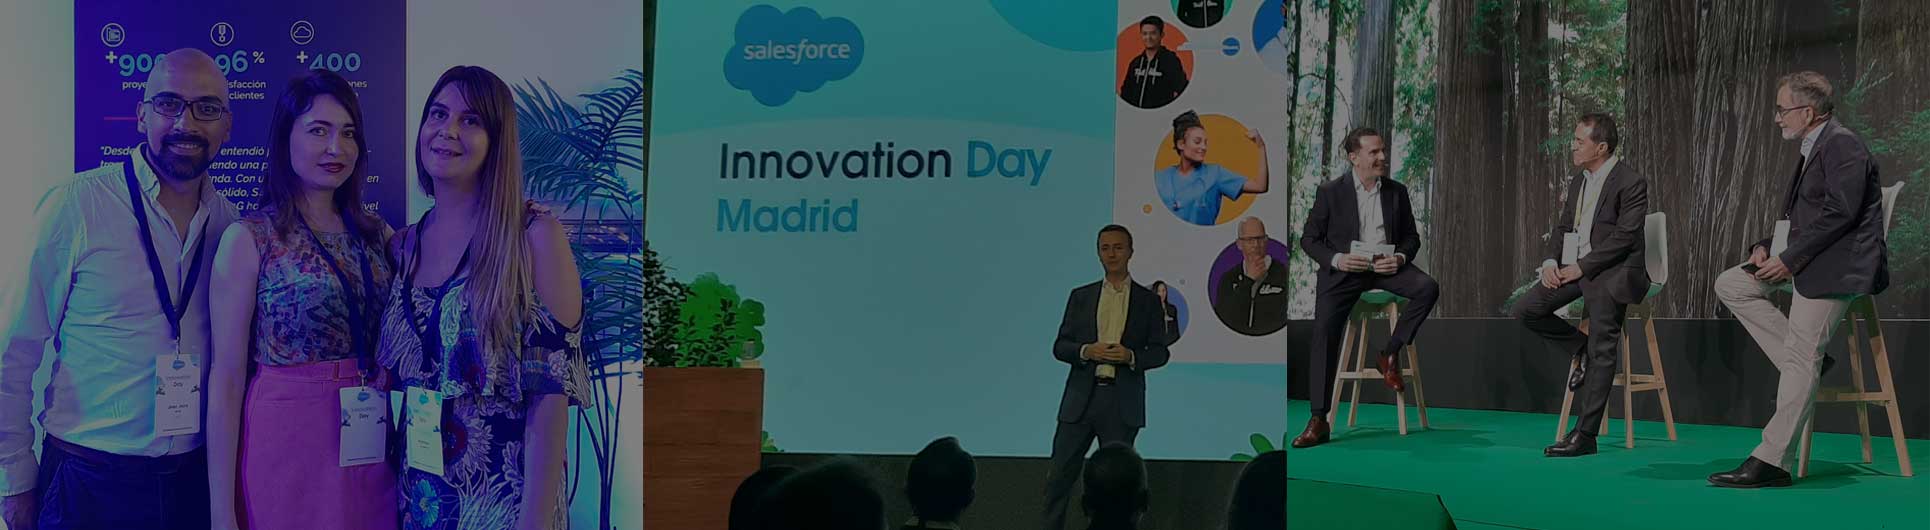 S4G estuvo presente en todos los Innovation Day de Salesforce